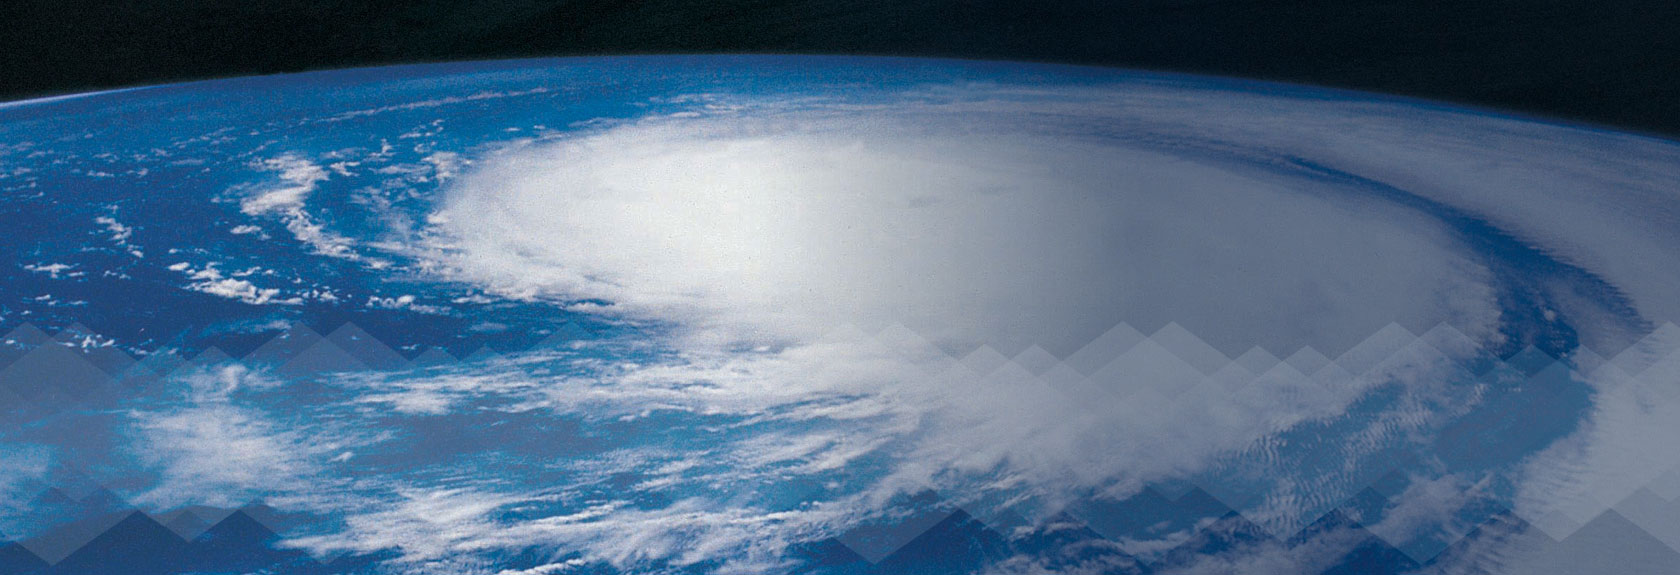 Huracán  en la Tierra visto desde el espacio